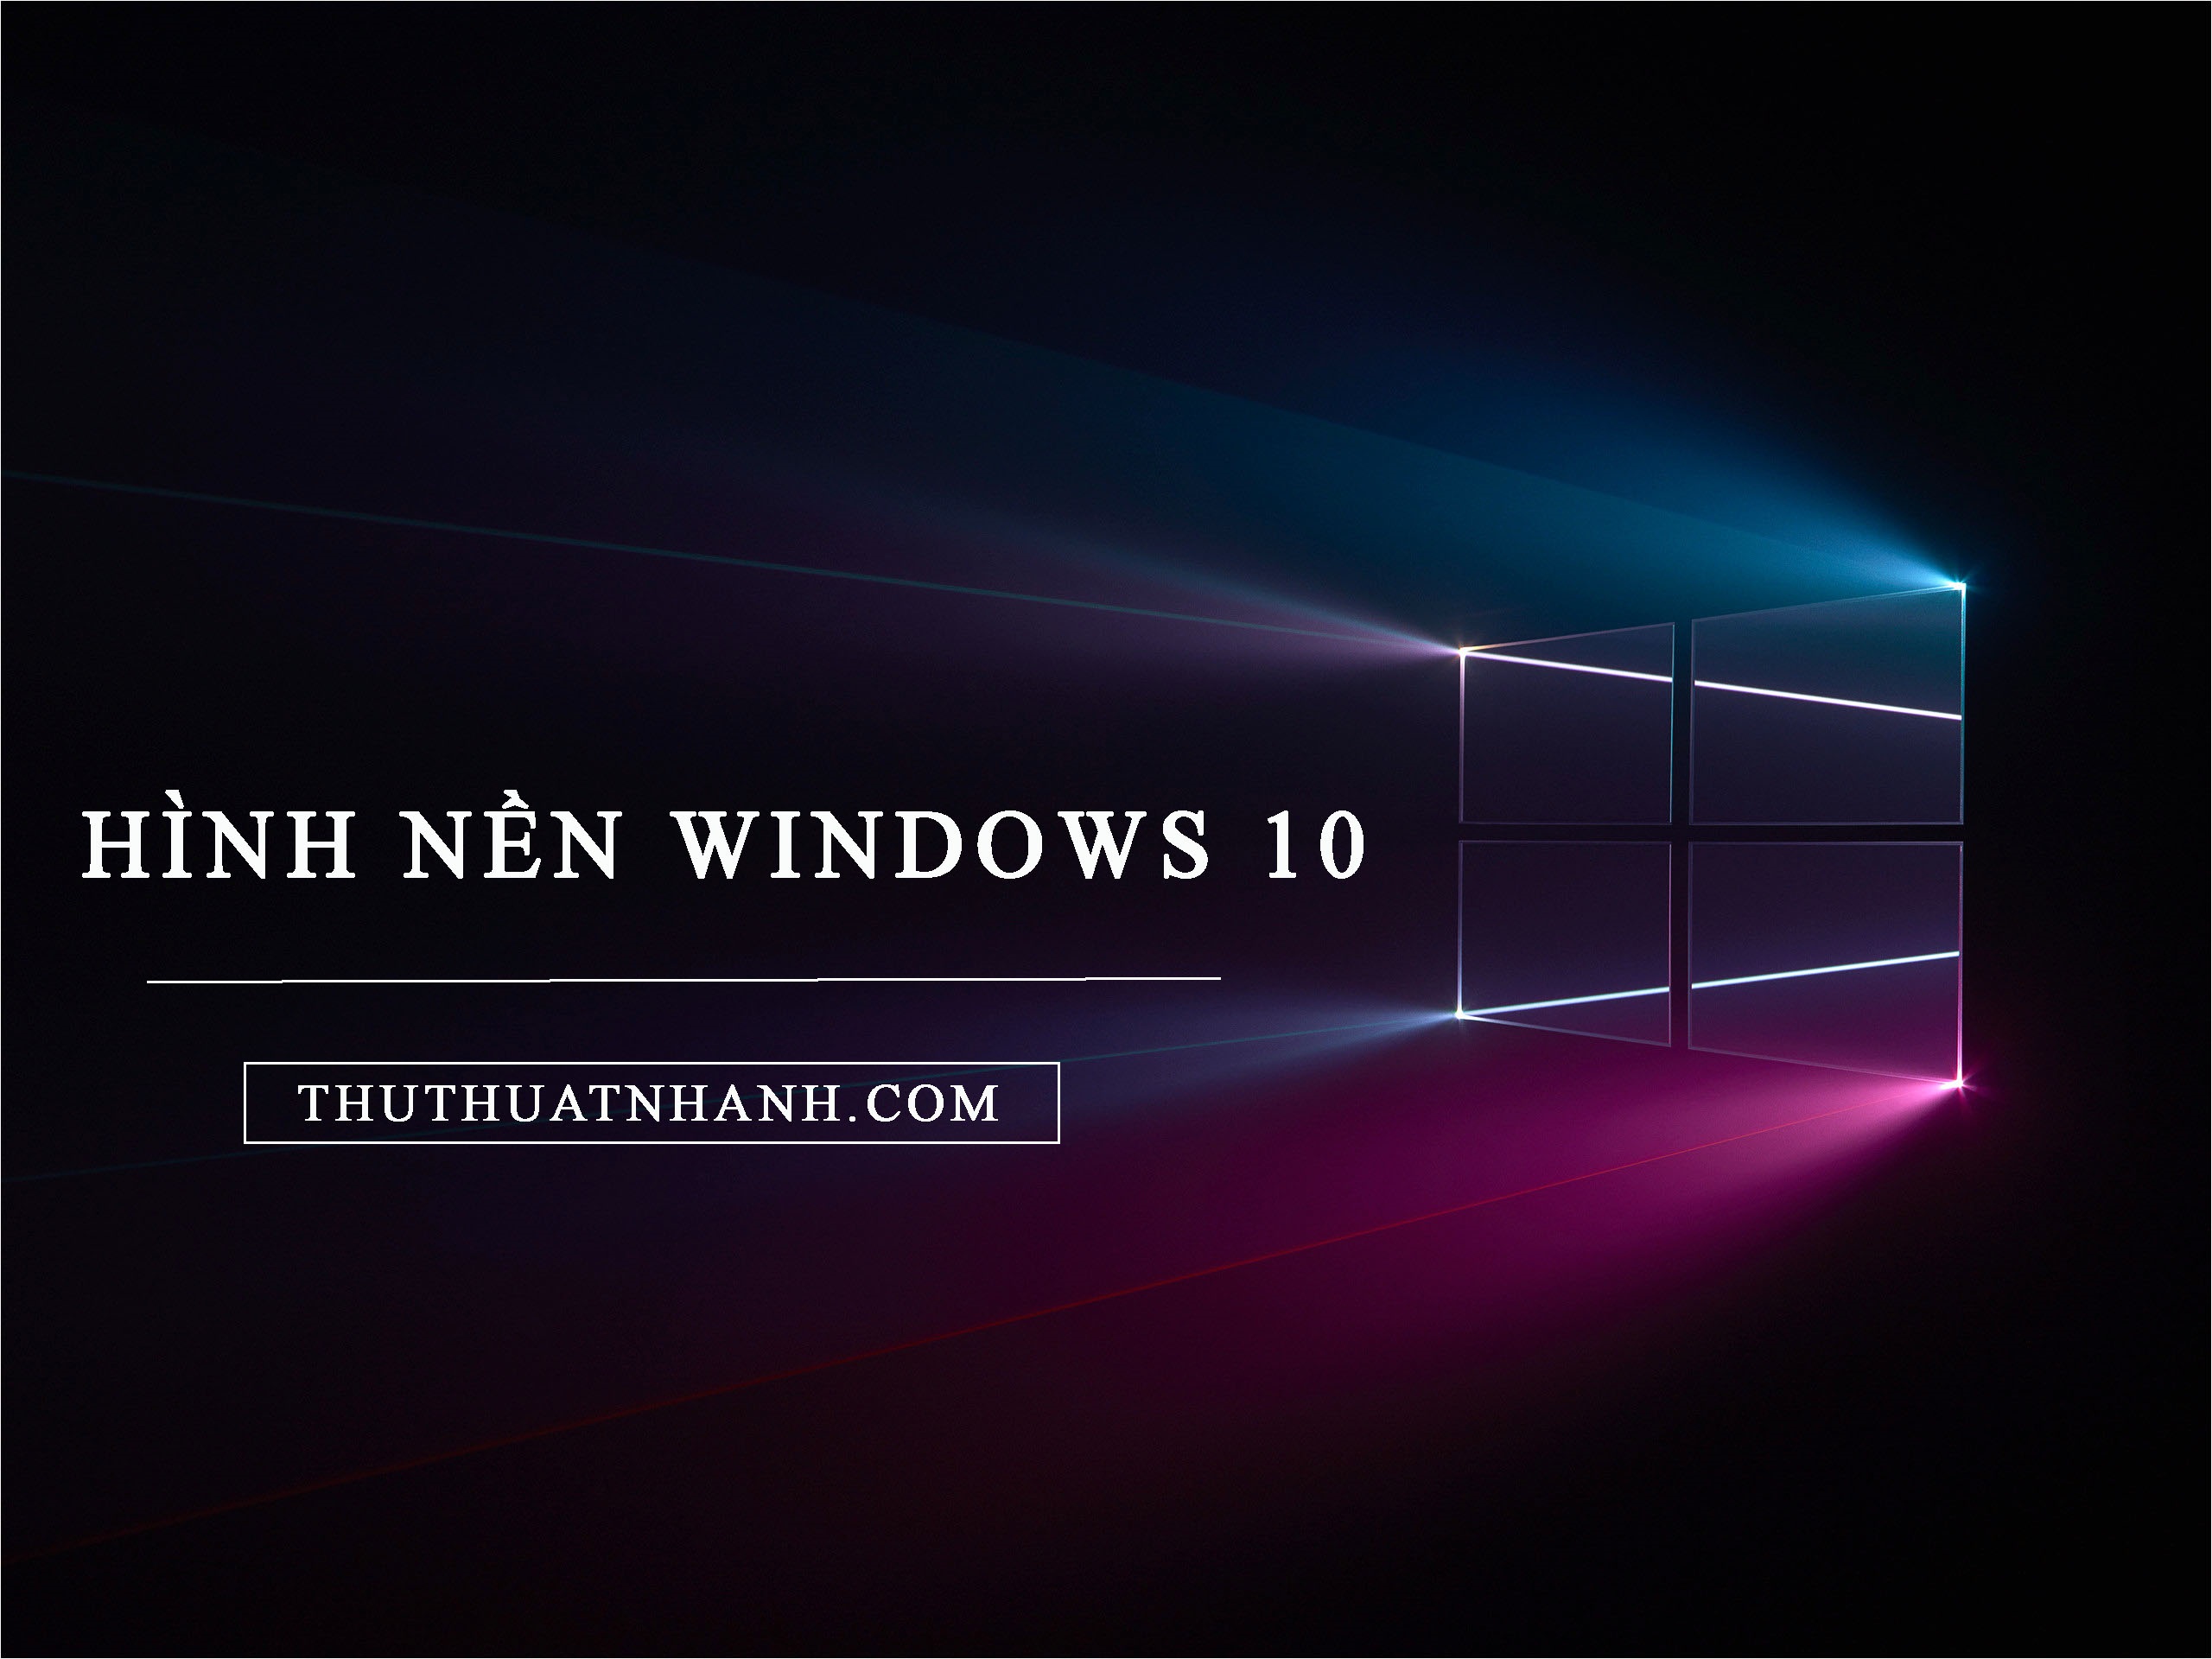 Nâng cấp Hình nền động cho máy tính để bàn Windows 10  Gõ Tiếng Việt